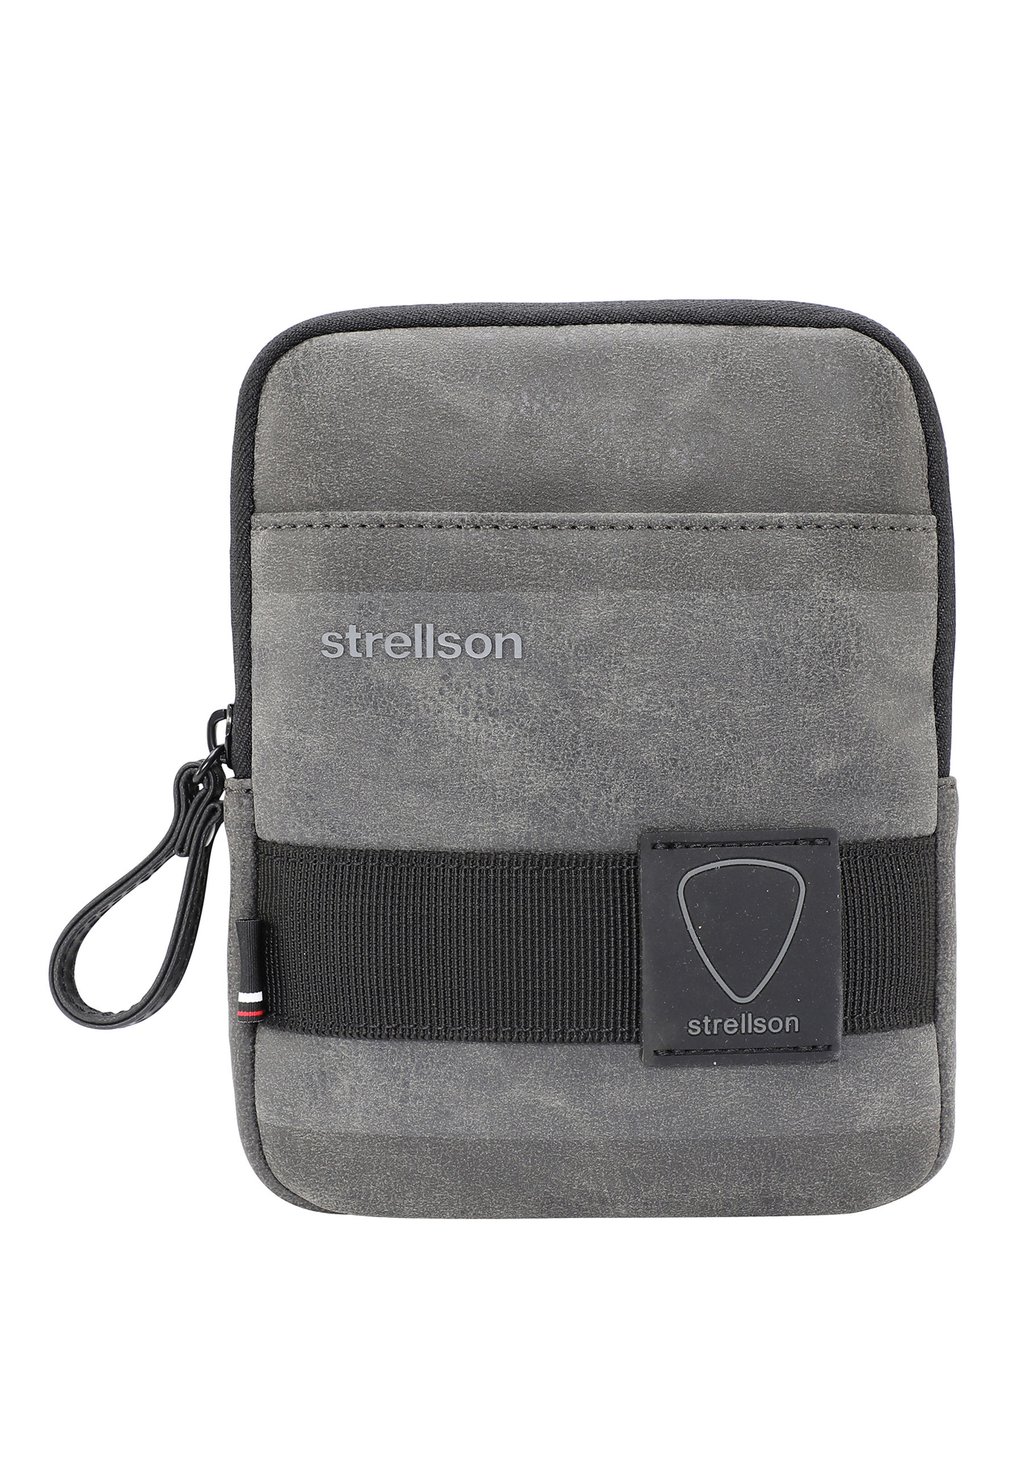 Сумка через плечо Strellson Premium, цвет darkgrey сумка через плечо strellson premium цвет darkgrey